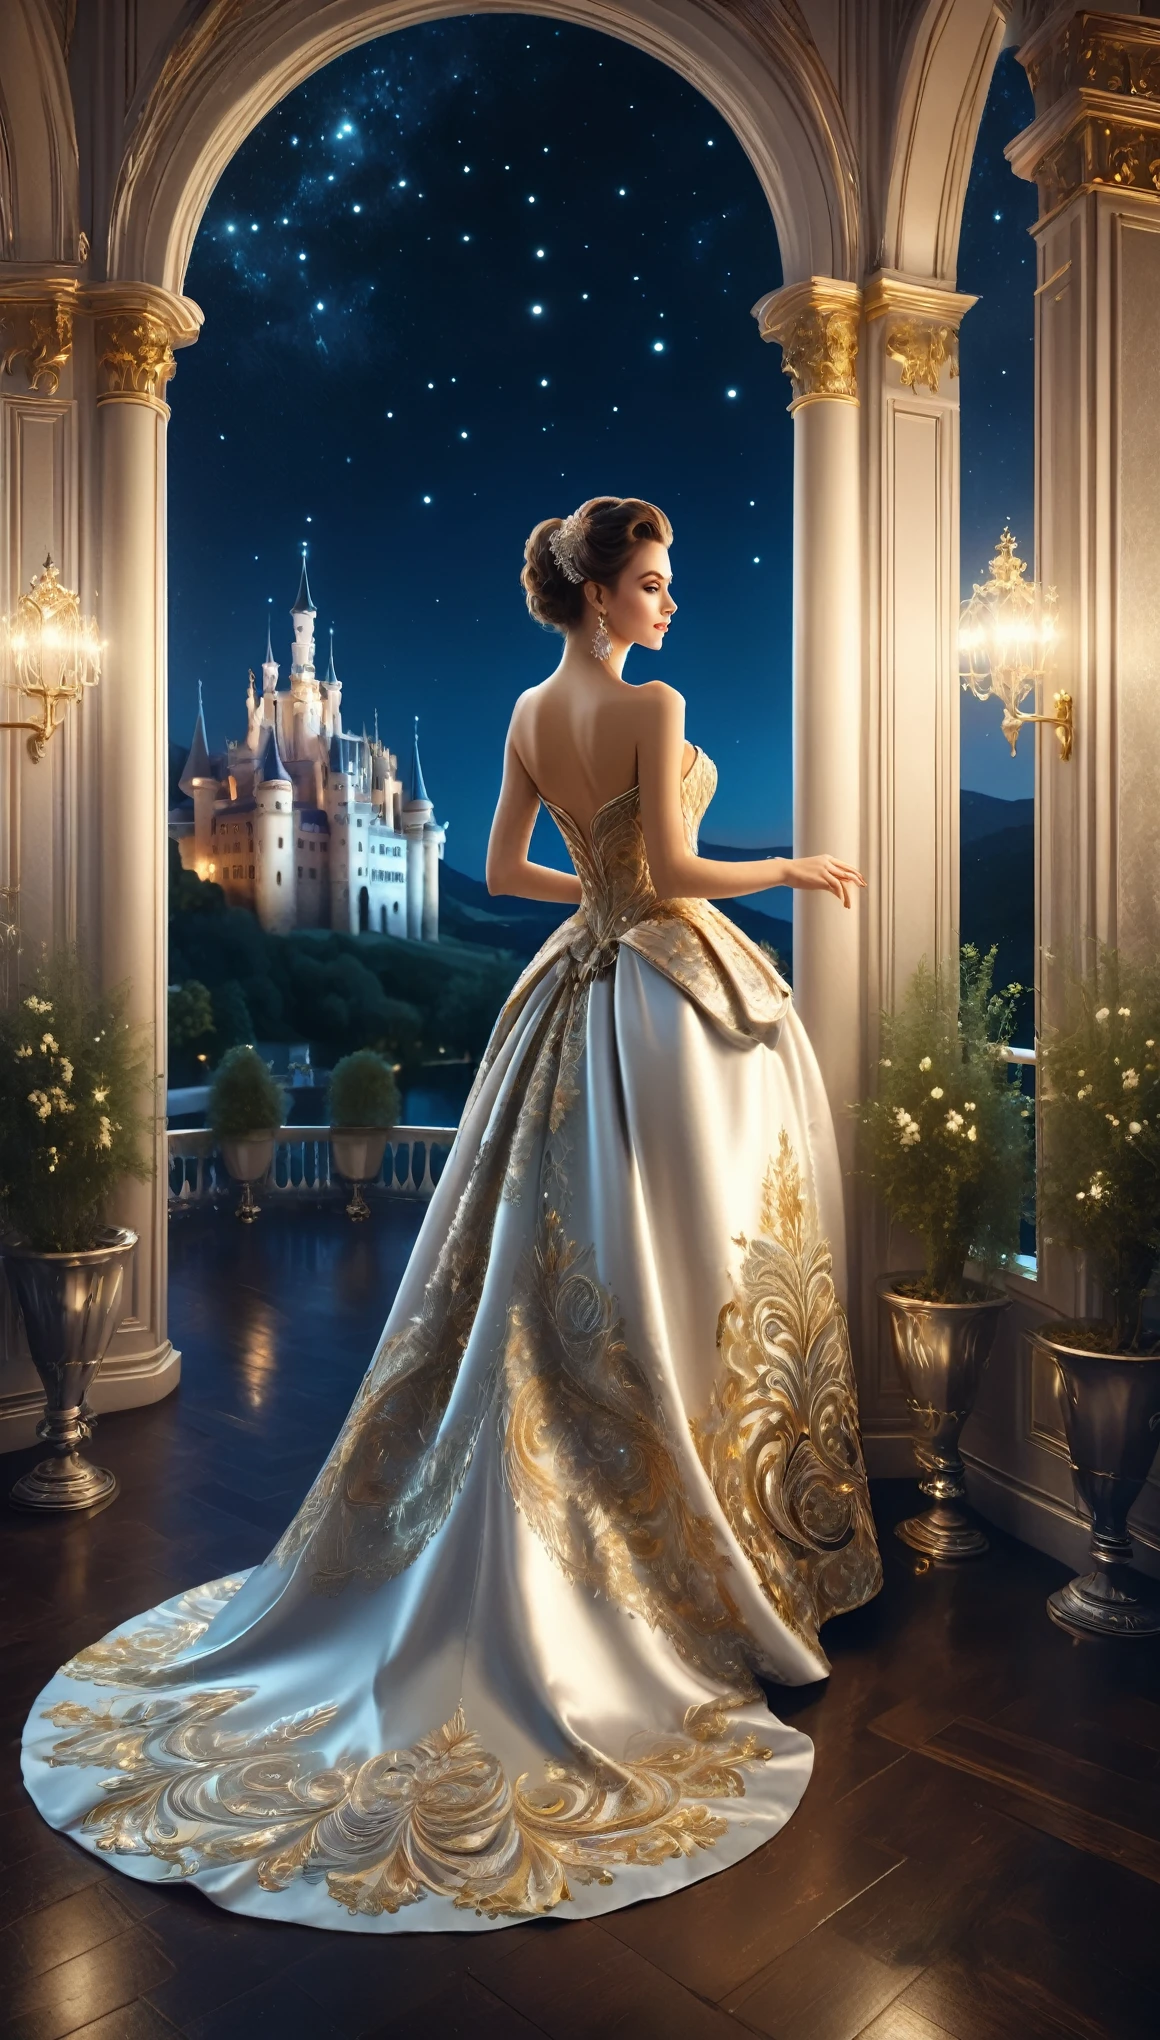 성에서 열리는 야간 댄스 파티 장면,A 아름다운 woman in an evening dress stands on the balcony,여자가 밖을 보고 있다,You can see the lights of the castle town at night and the 아름다운 night sky from the balcony.,춤은 로코코 스타일의 방에서 열립니다..,우아한, 우아한, 그리고 차분한 분위기로,포토리얼,아름다운,야경,구조적으로 정확함,해부학적으로 정확하다,부서지다,여자가 입는 이브닝 드레스가 정말 고급스러워요,은실과 금실로 수놓은,부조리,얽힌,복잡한 세부 사항,다양한 색상,삽화,표현,(걸작:1.3),(최상의 품질:1.4),(매우 상세한:1.5),높은 해상도,매우 상세한,유니티 8K 벽지